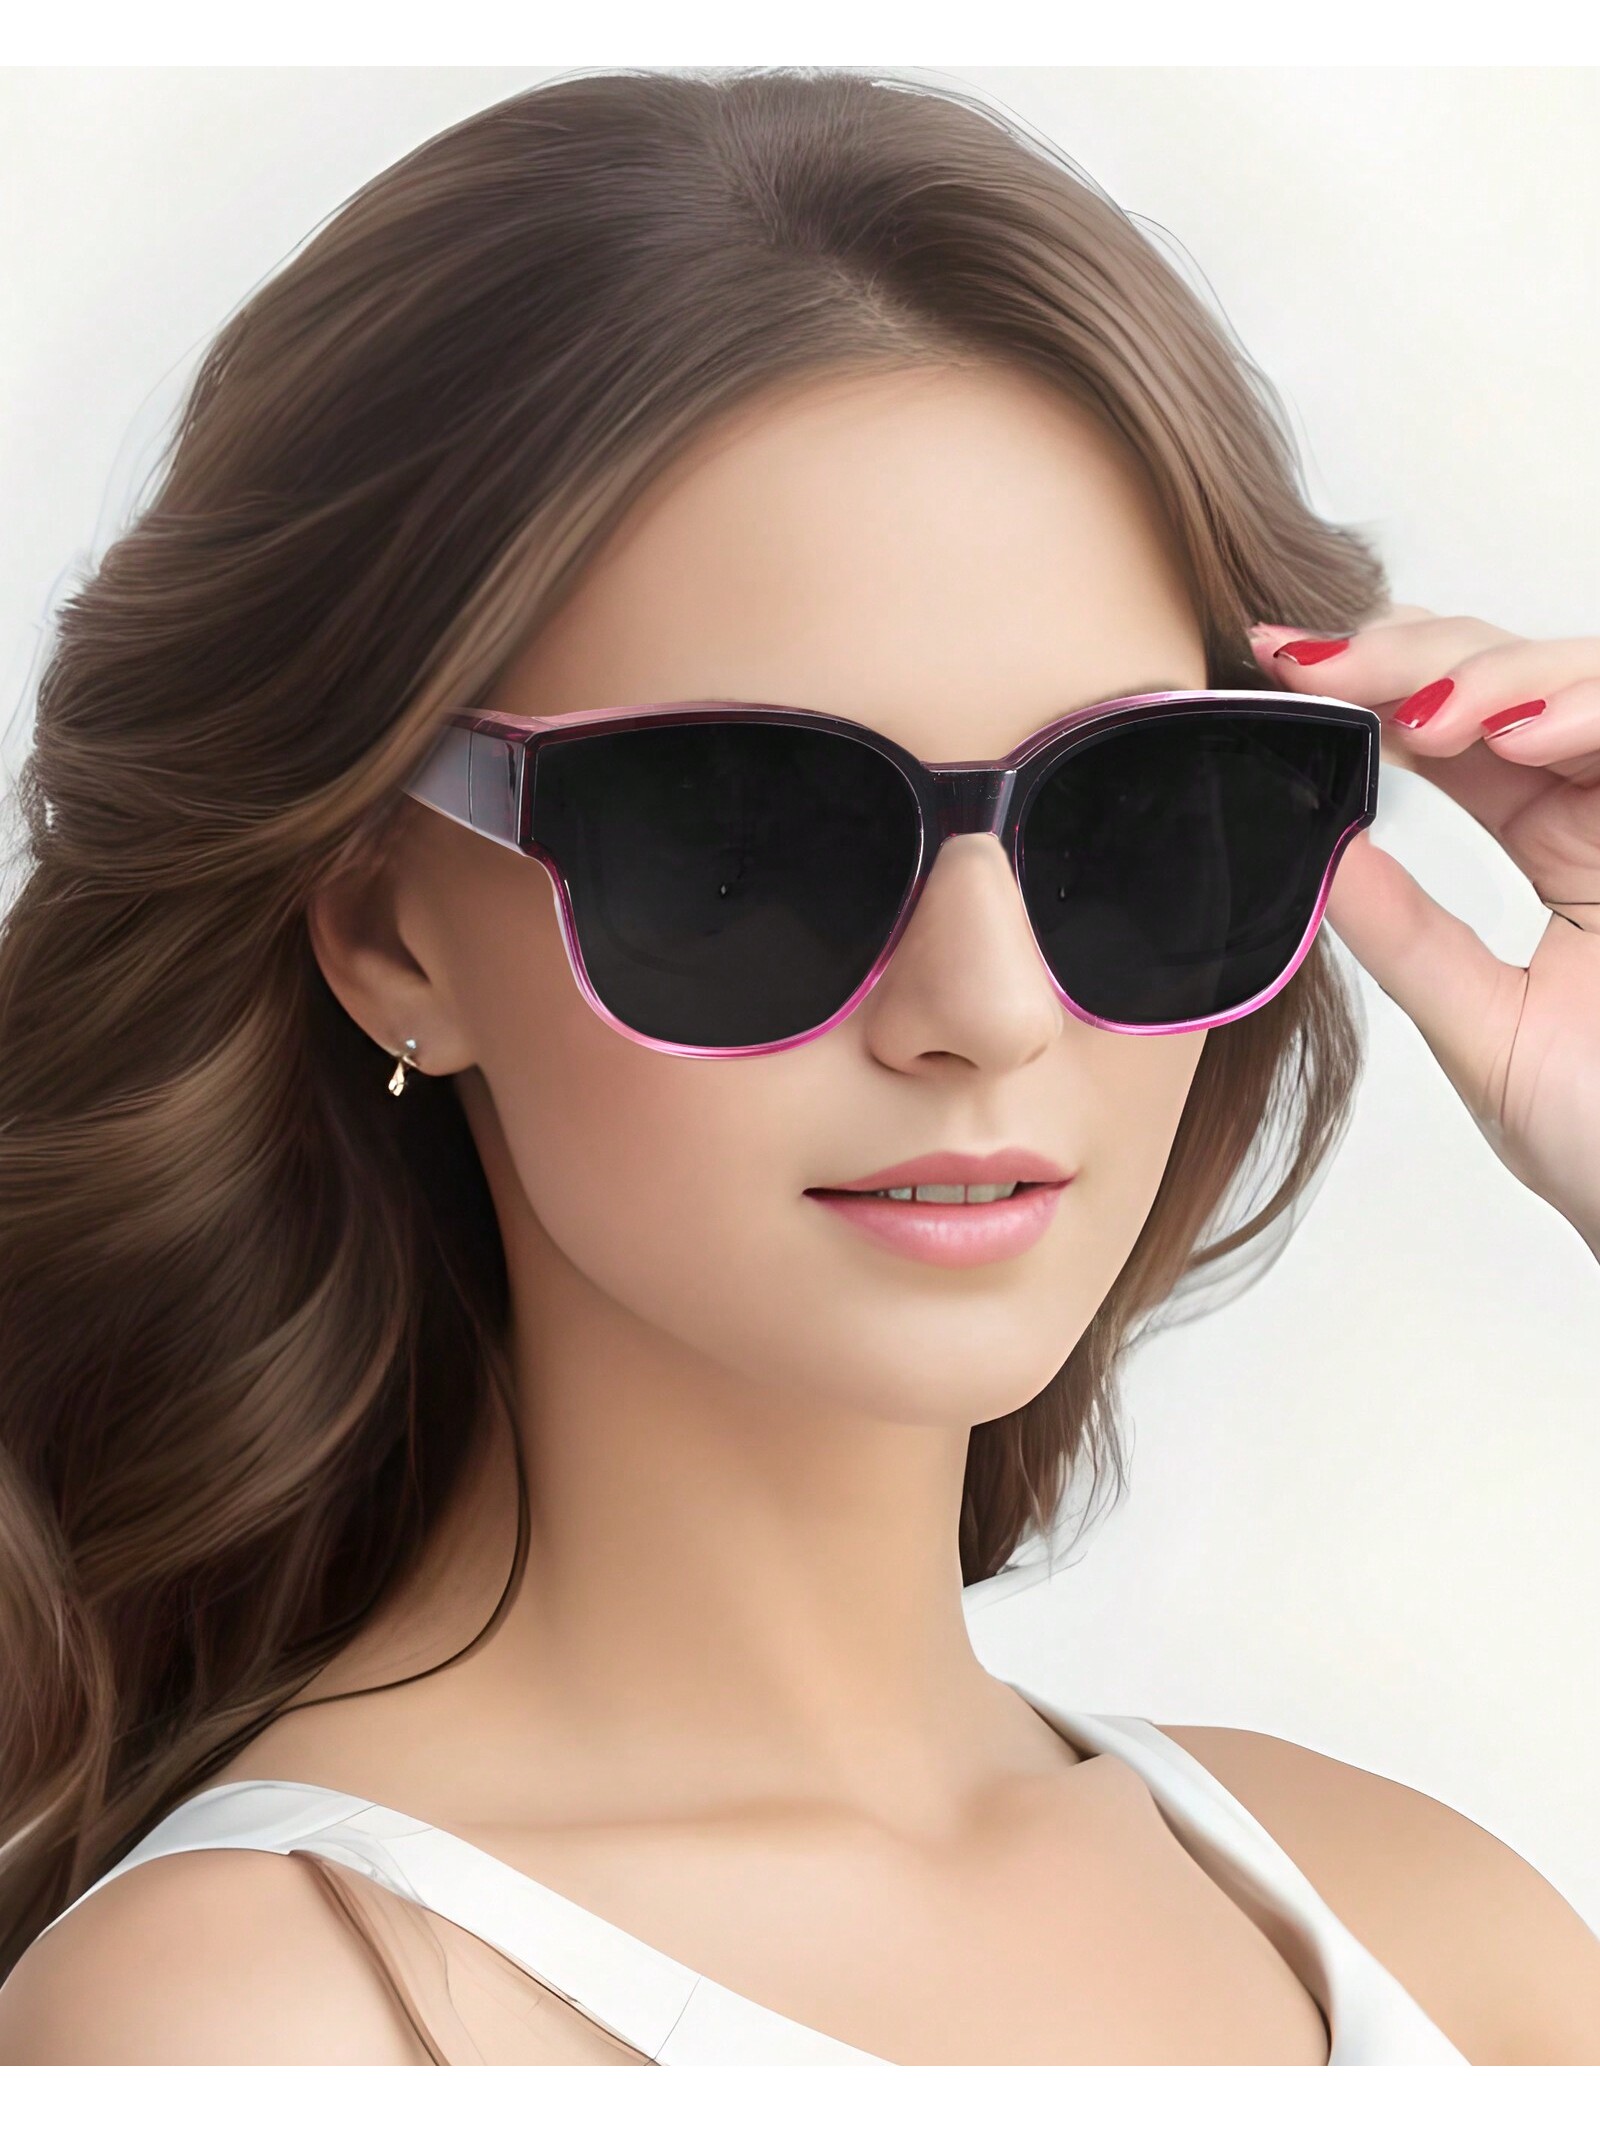 LVIOE поляризационные солнцезащитные очки для женщин и мужчин